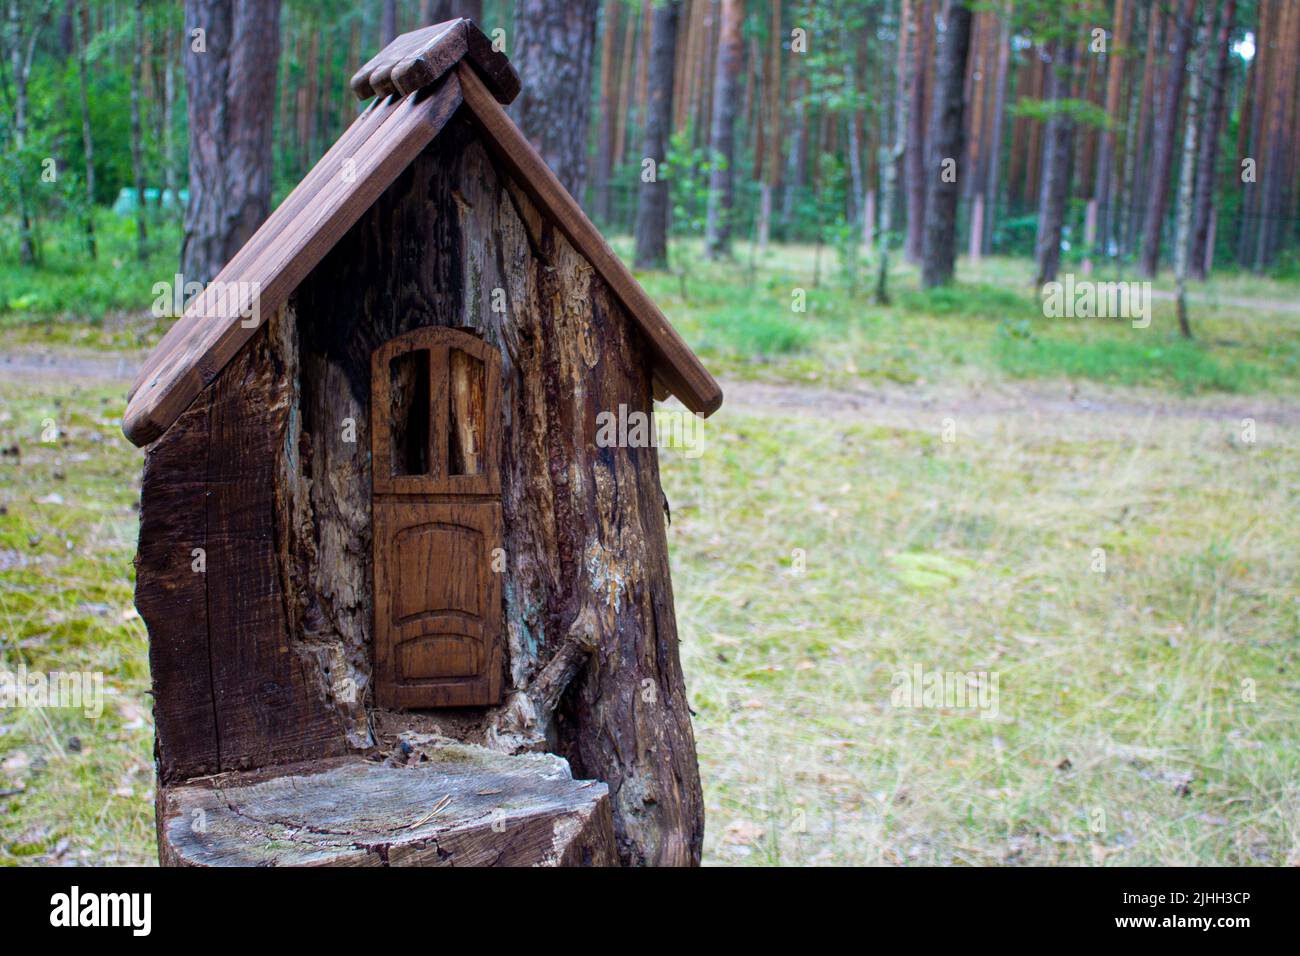 Haus in einem Stumpf in einem Pinienwald. Sommersonntag. Gehäuse für Waldtiere mit Kunstelementen. Stockfoto